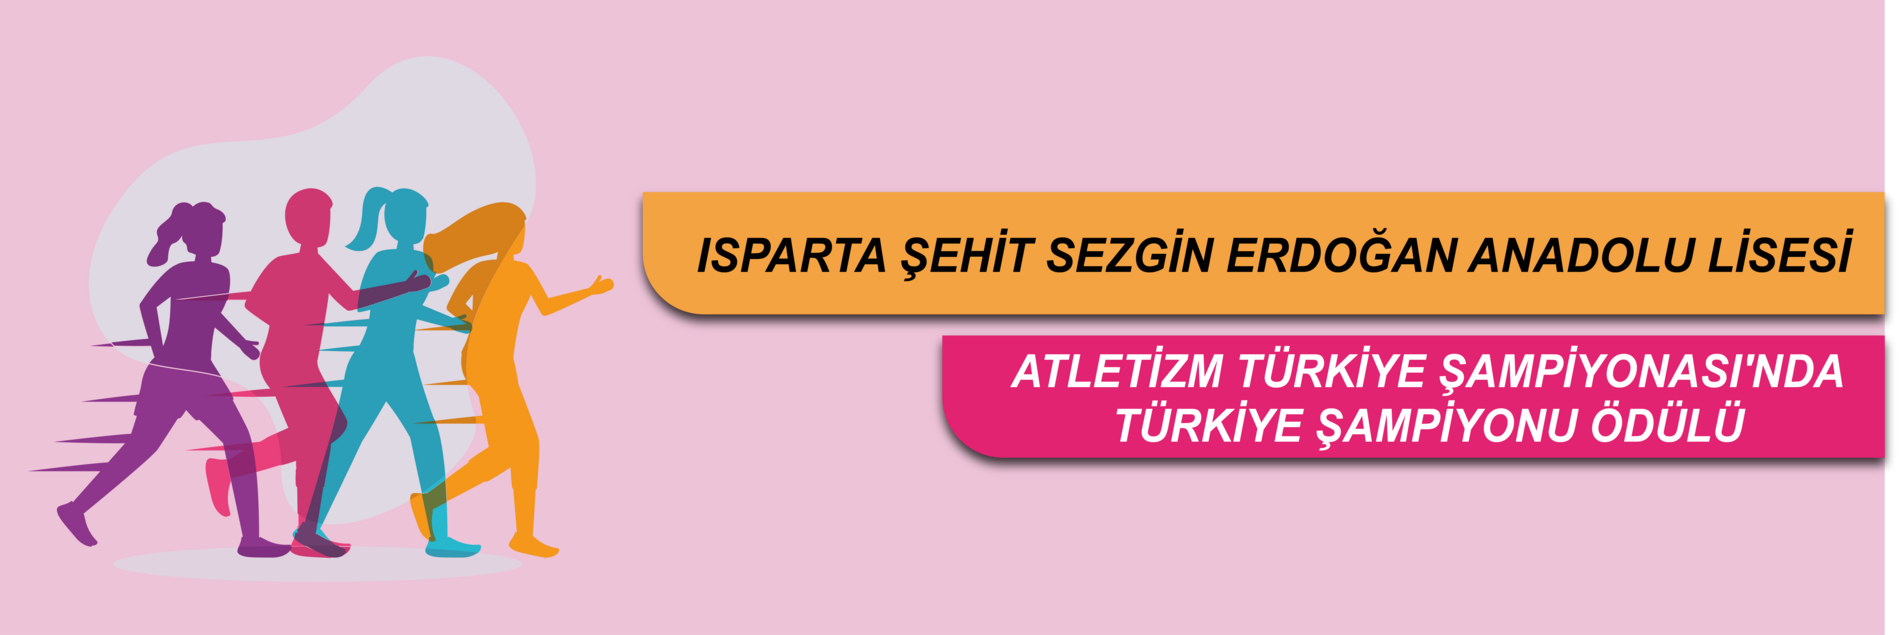 Atletizm Türkiye Şampiyonası'nda Türkiye Şampiyonu Ödülü